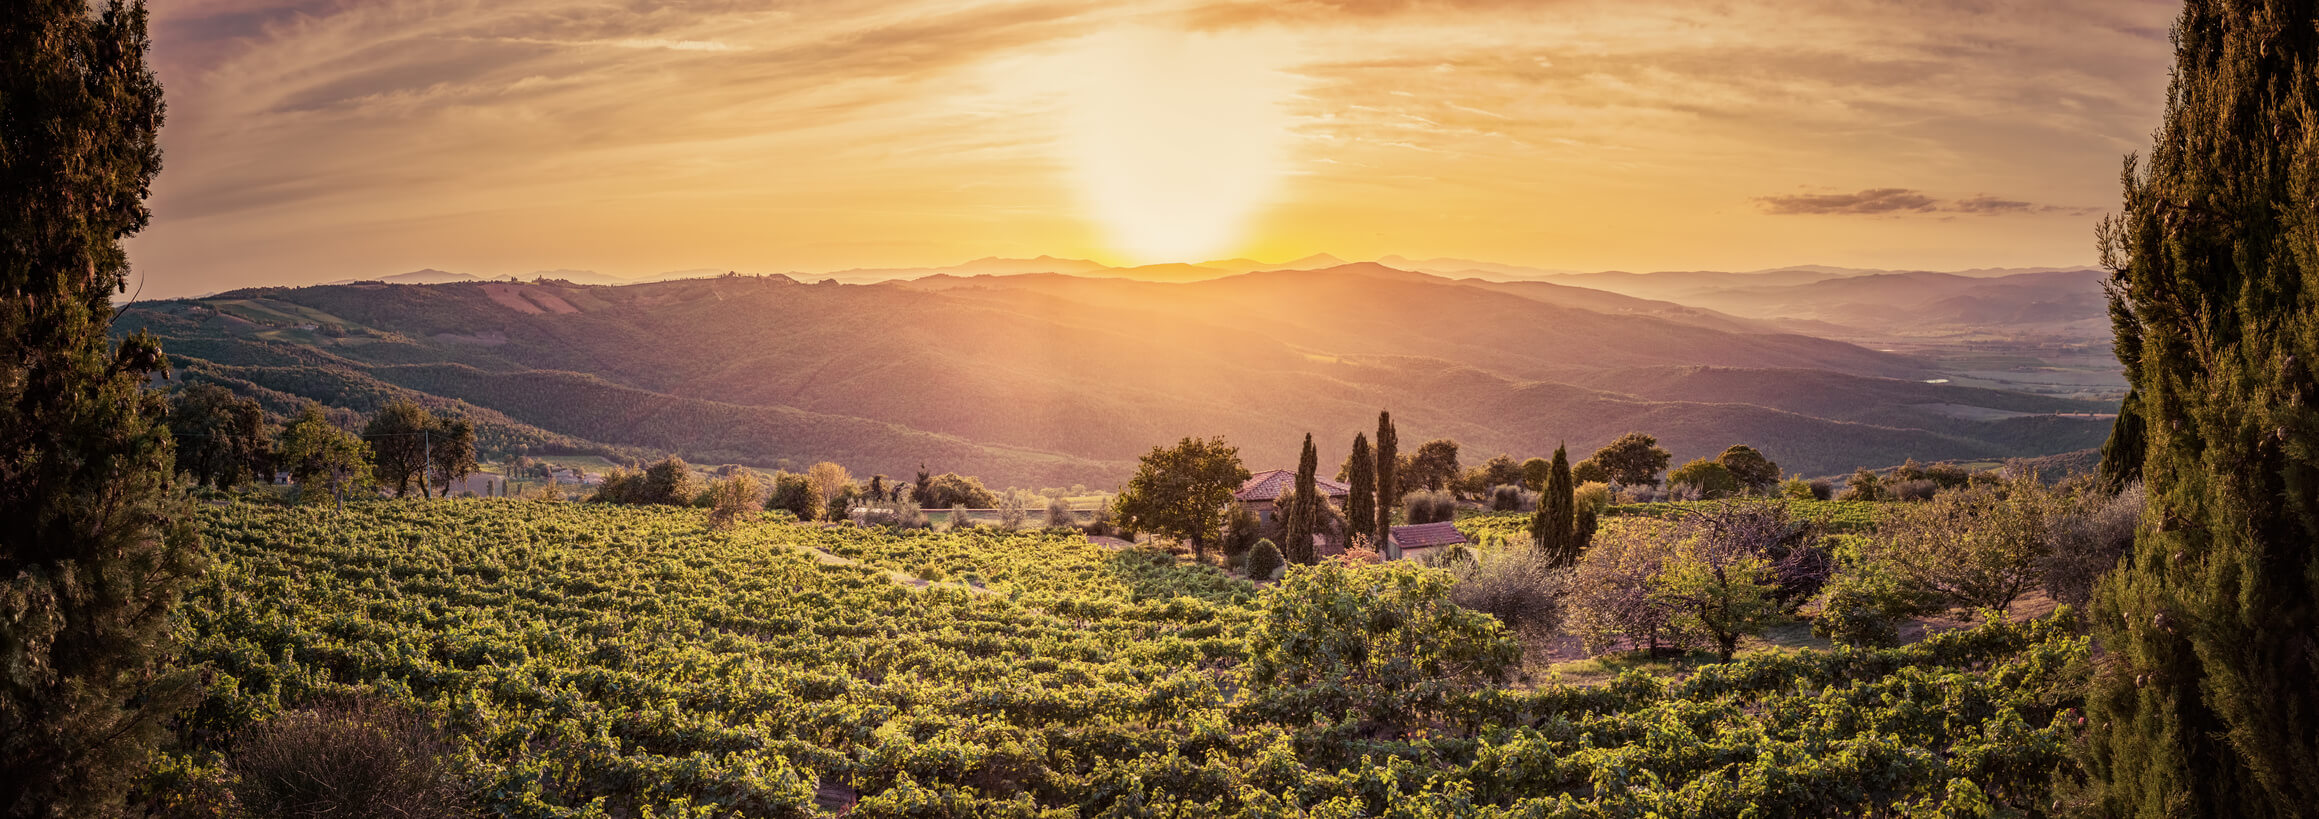 tuscany sunset wine tour